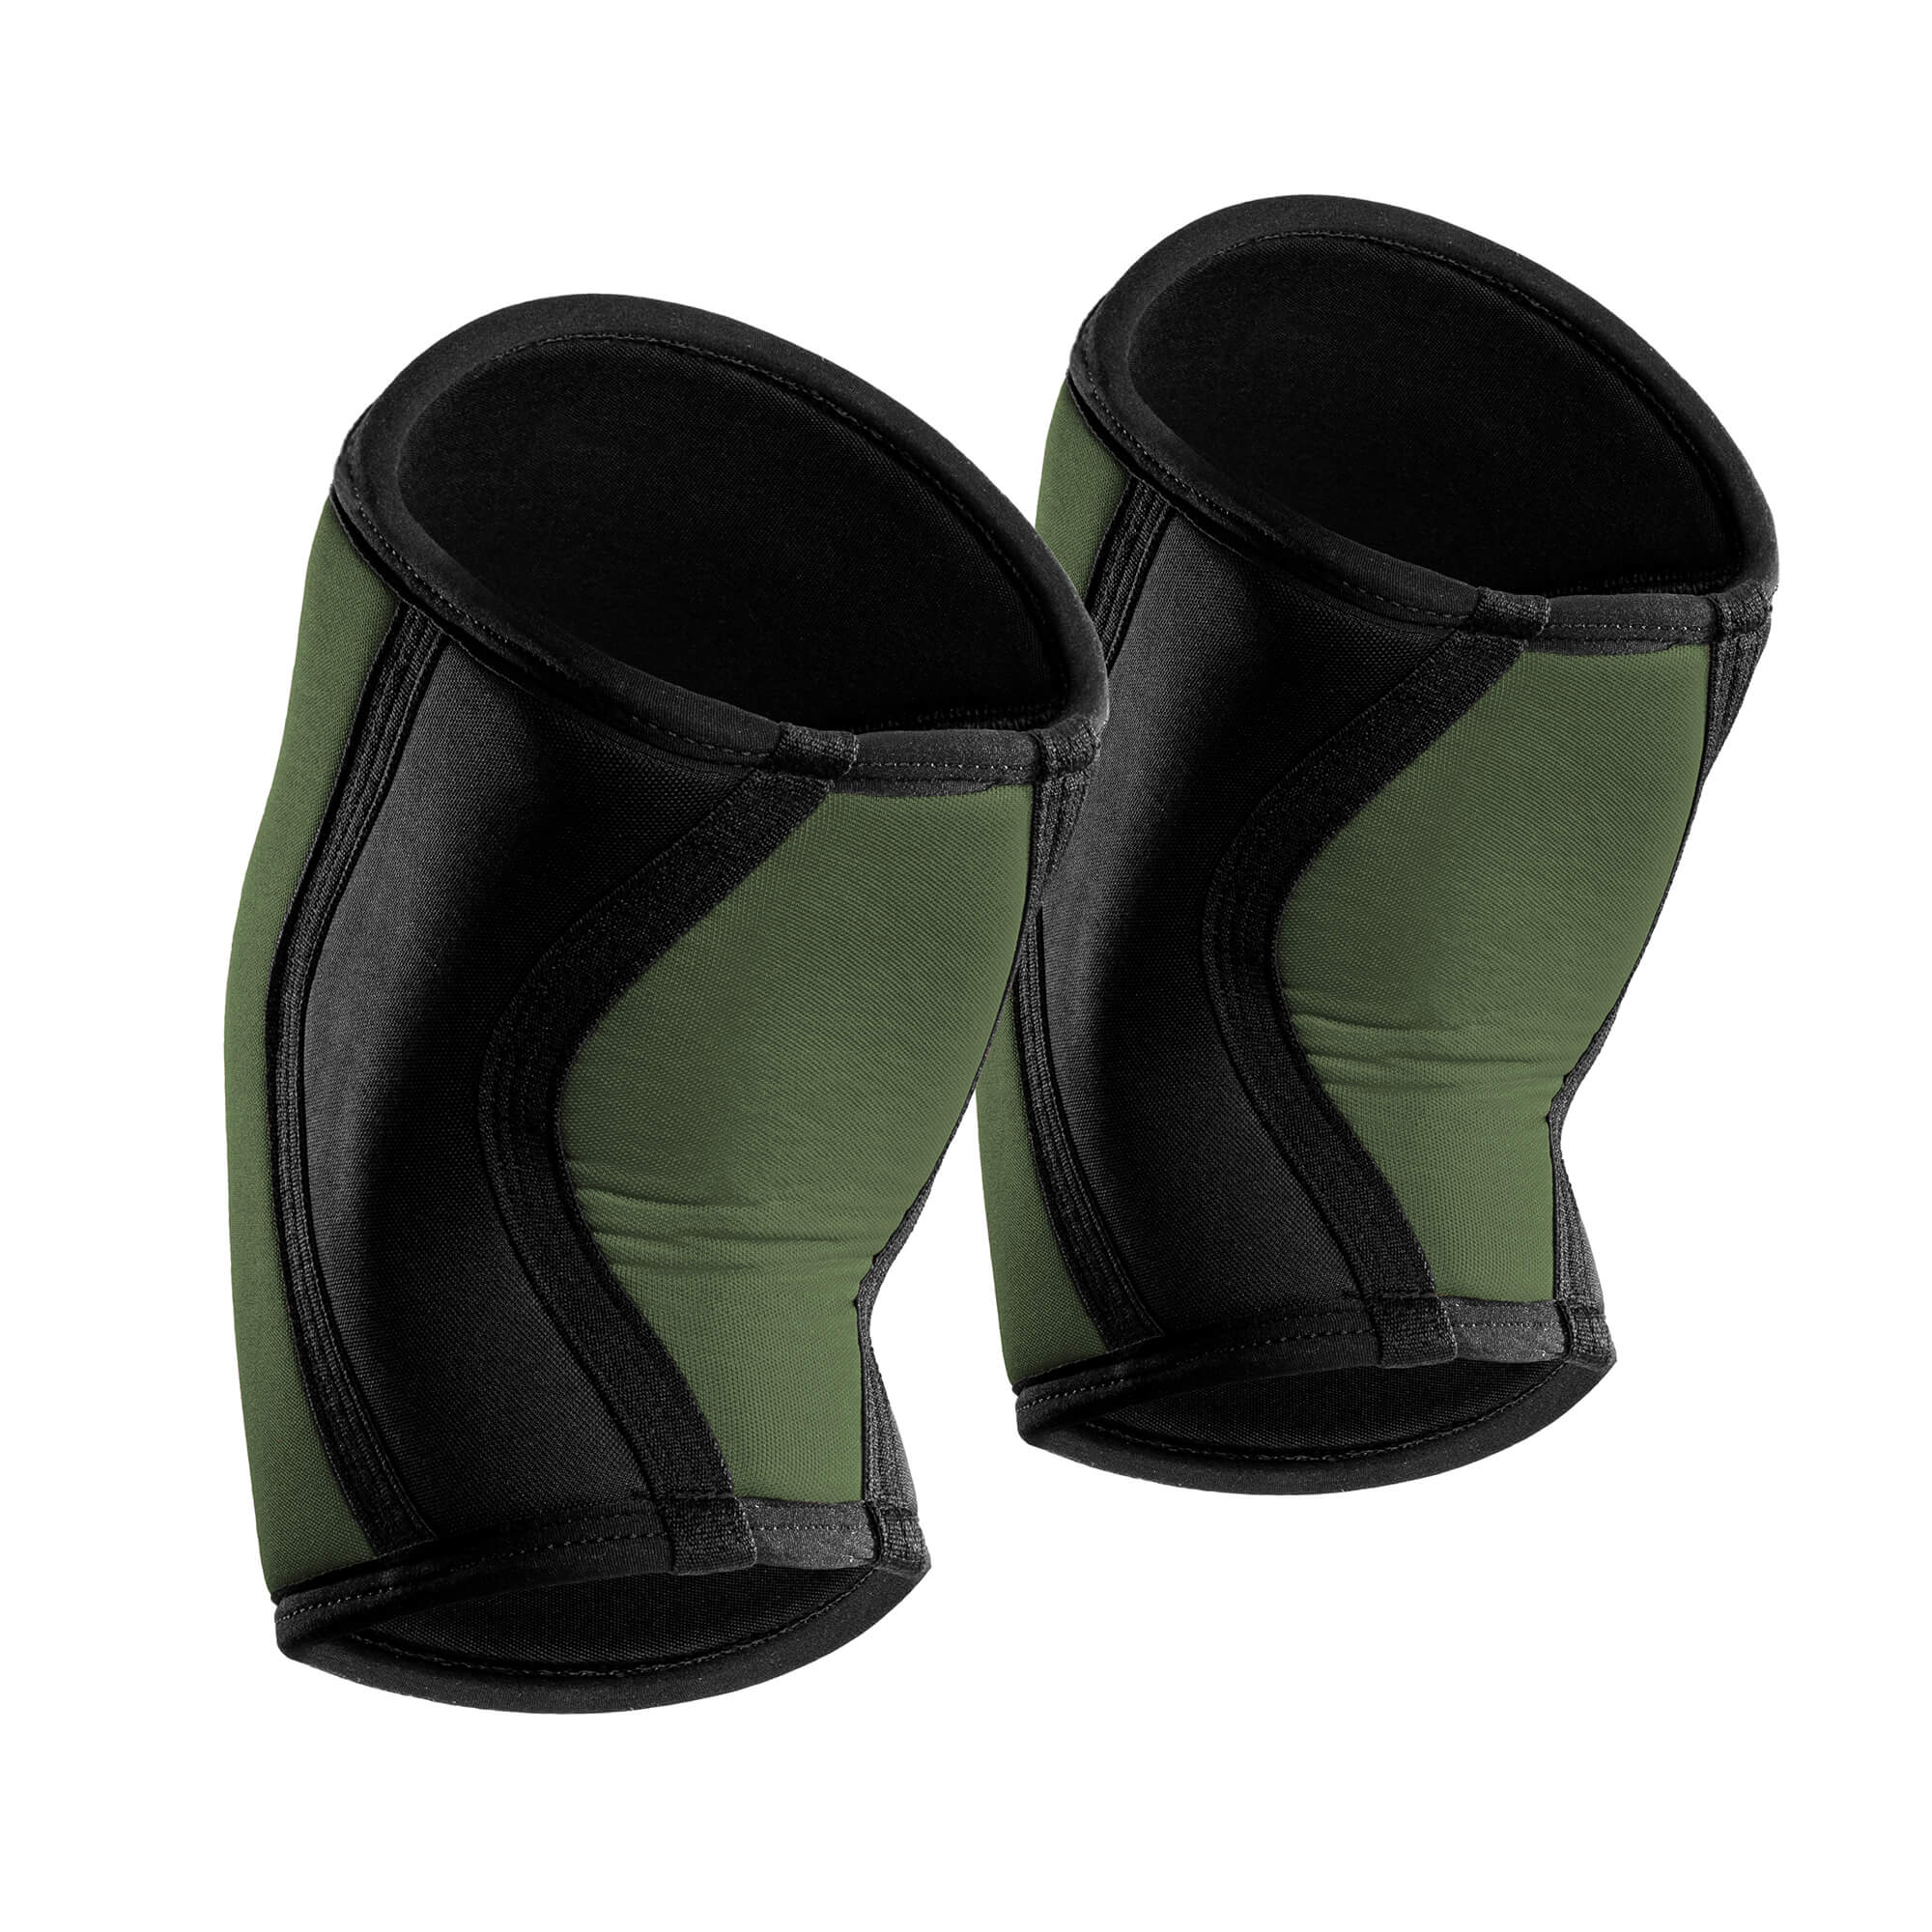 7mm Knee Sleeves (25cm) - Green